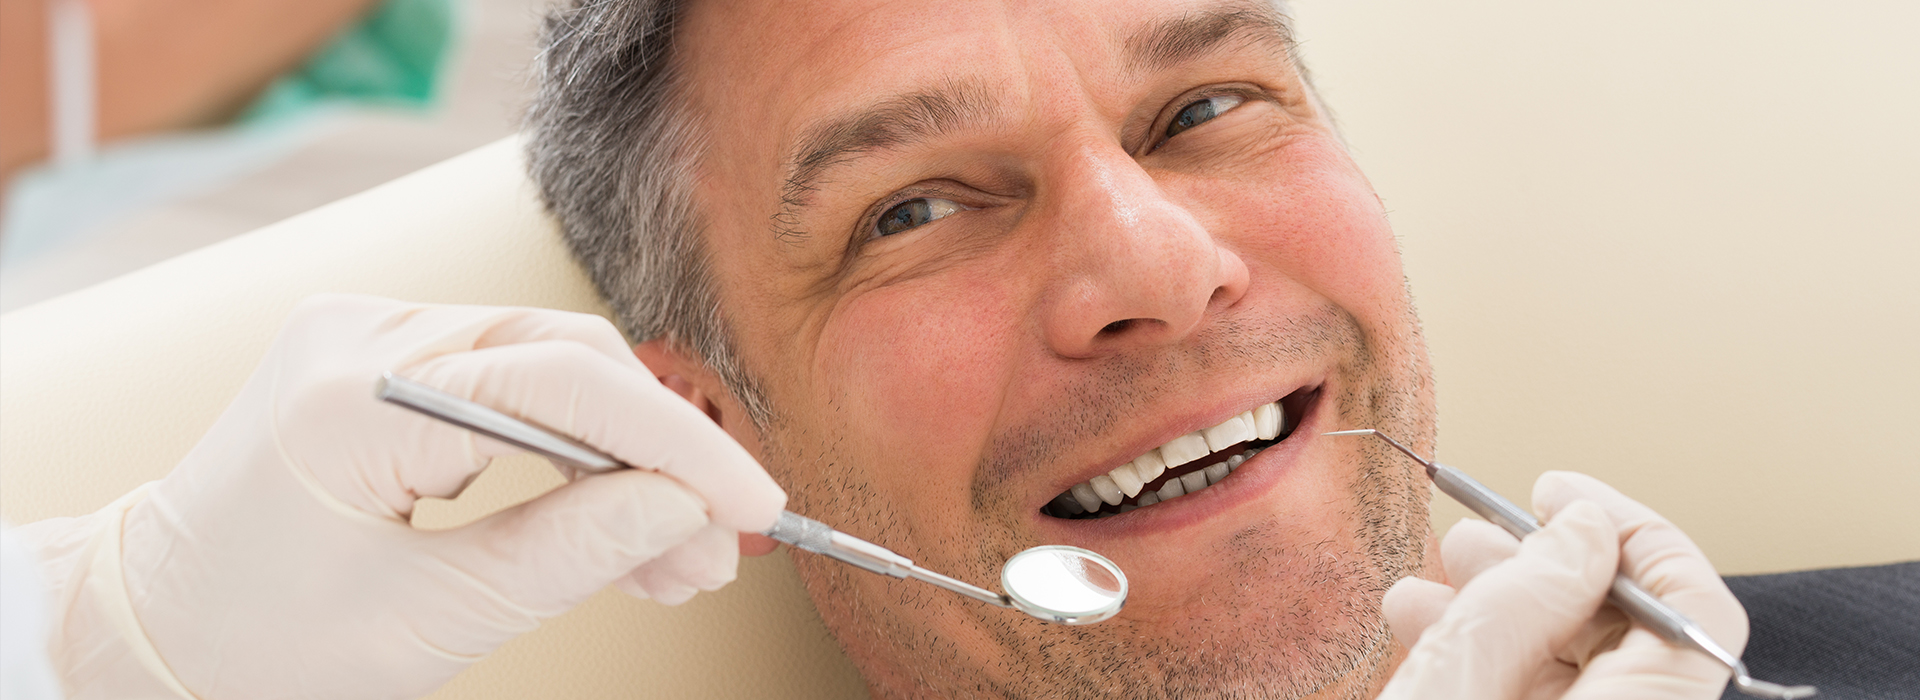 Smile Philosophy Dental Care | Implant Dentistry, Dental Bridges and Implant Restorations